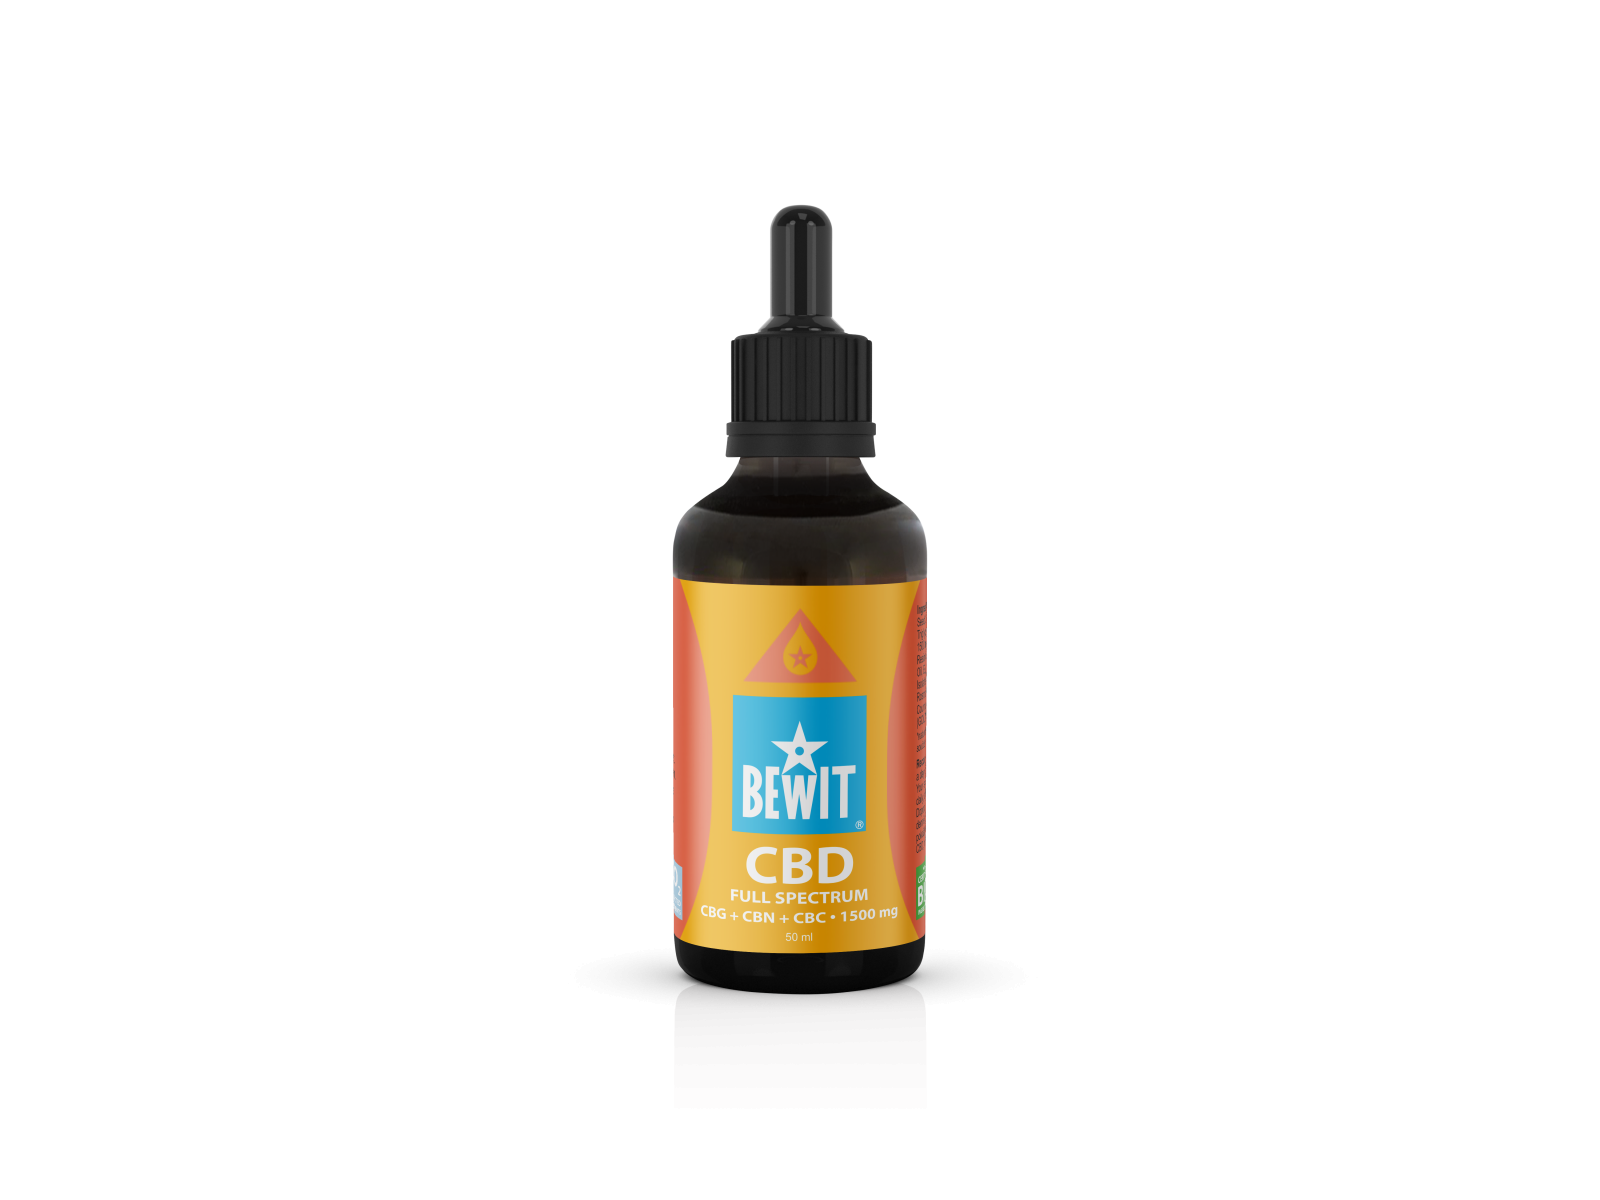 BEWIT CBD FULL SPECTRUM CBG + CBN + CBC (ULTIMATE BOOSTER) 1500 mg - IN ORGANIC HEMP OIL - 2